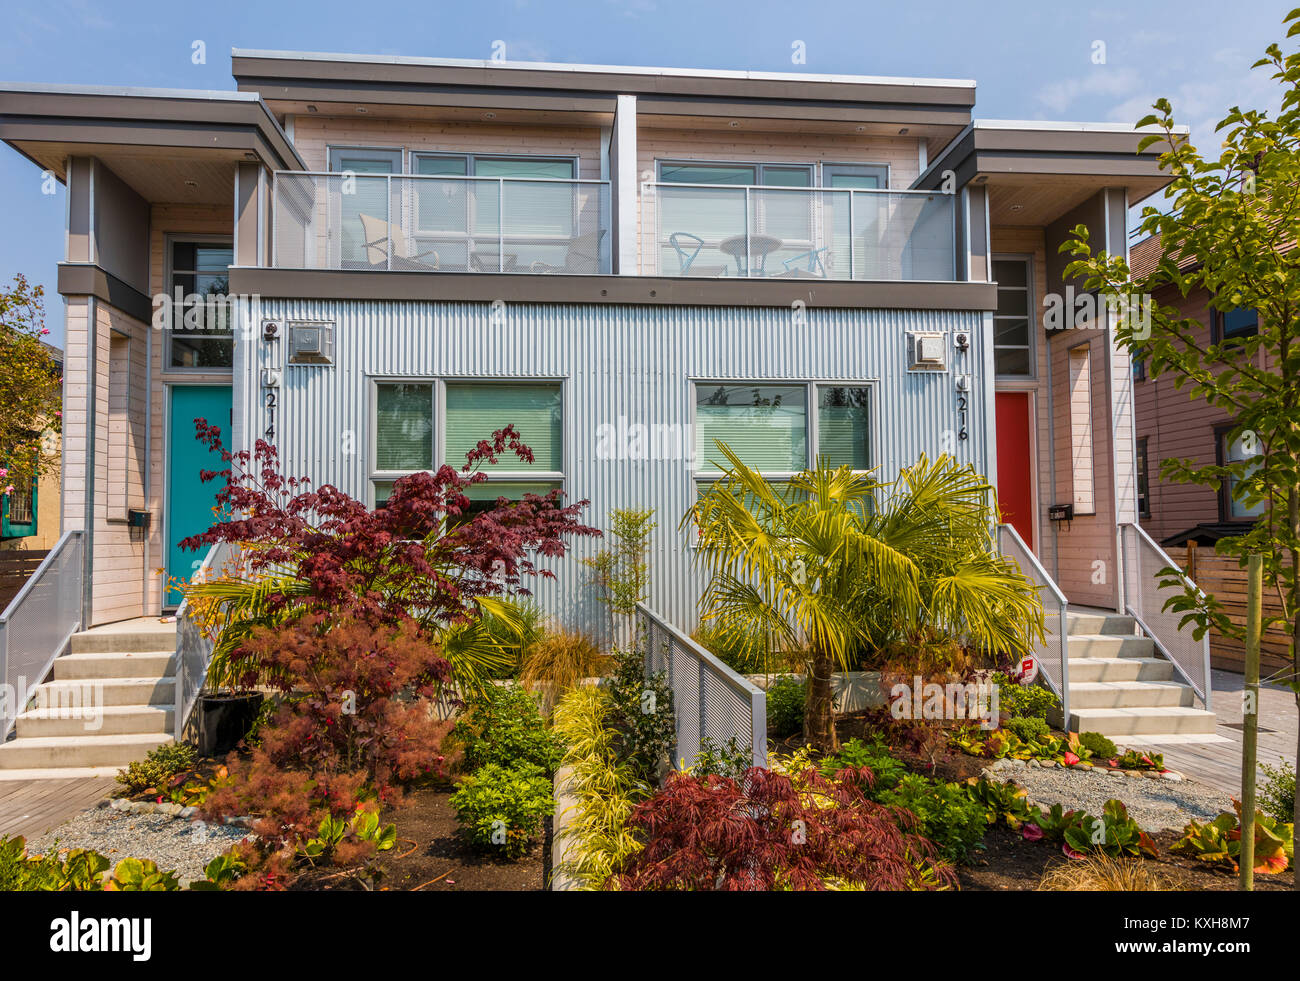 Moderne Architektur Stil Haus in Victoria, der auch als Garden City auf Vancouver Island in British Columbia, Kanada bekannt Stockfoto